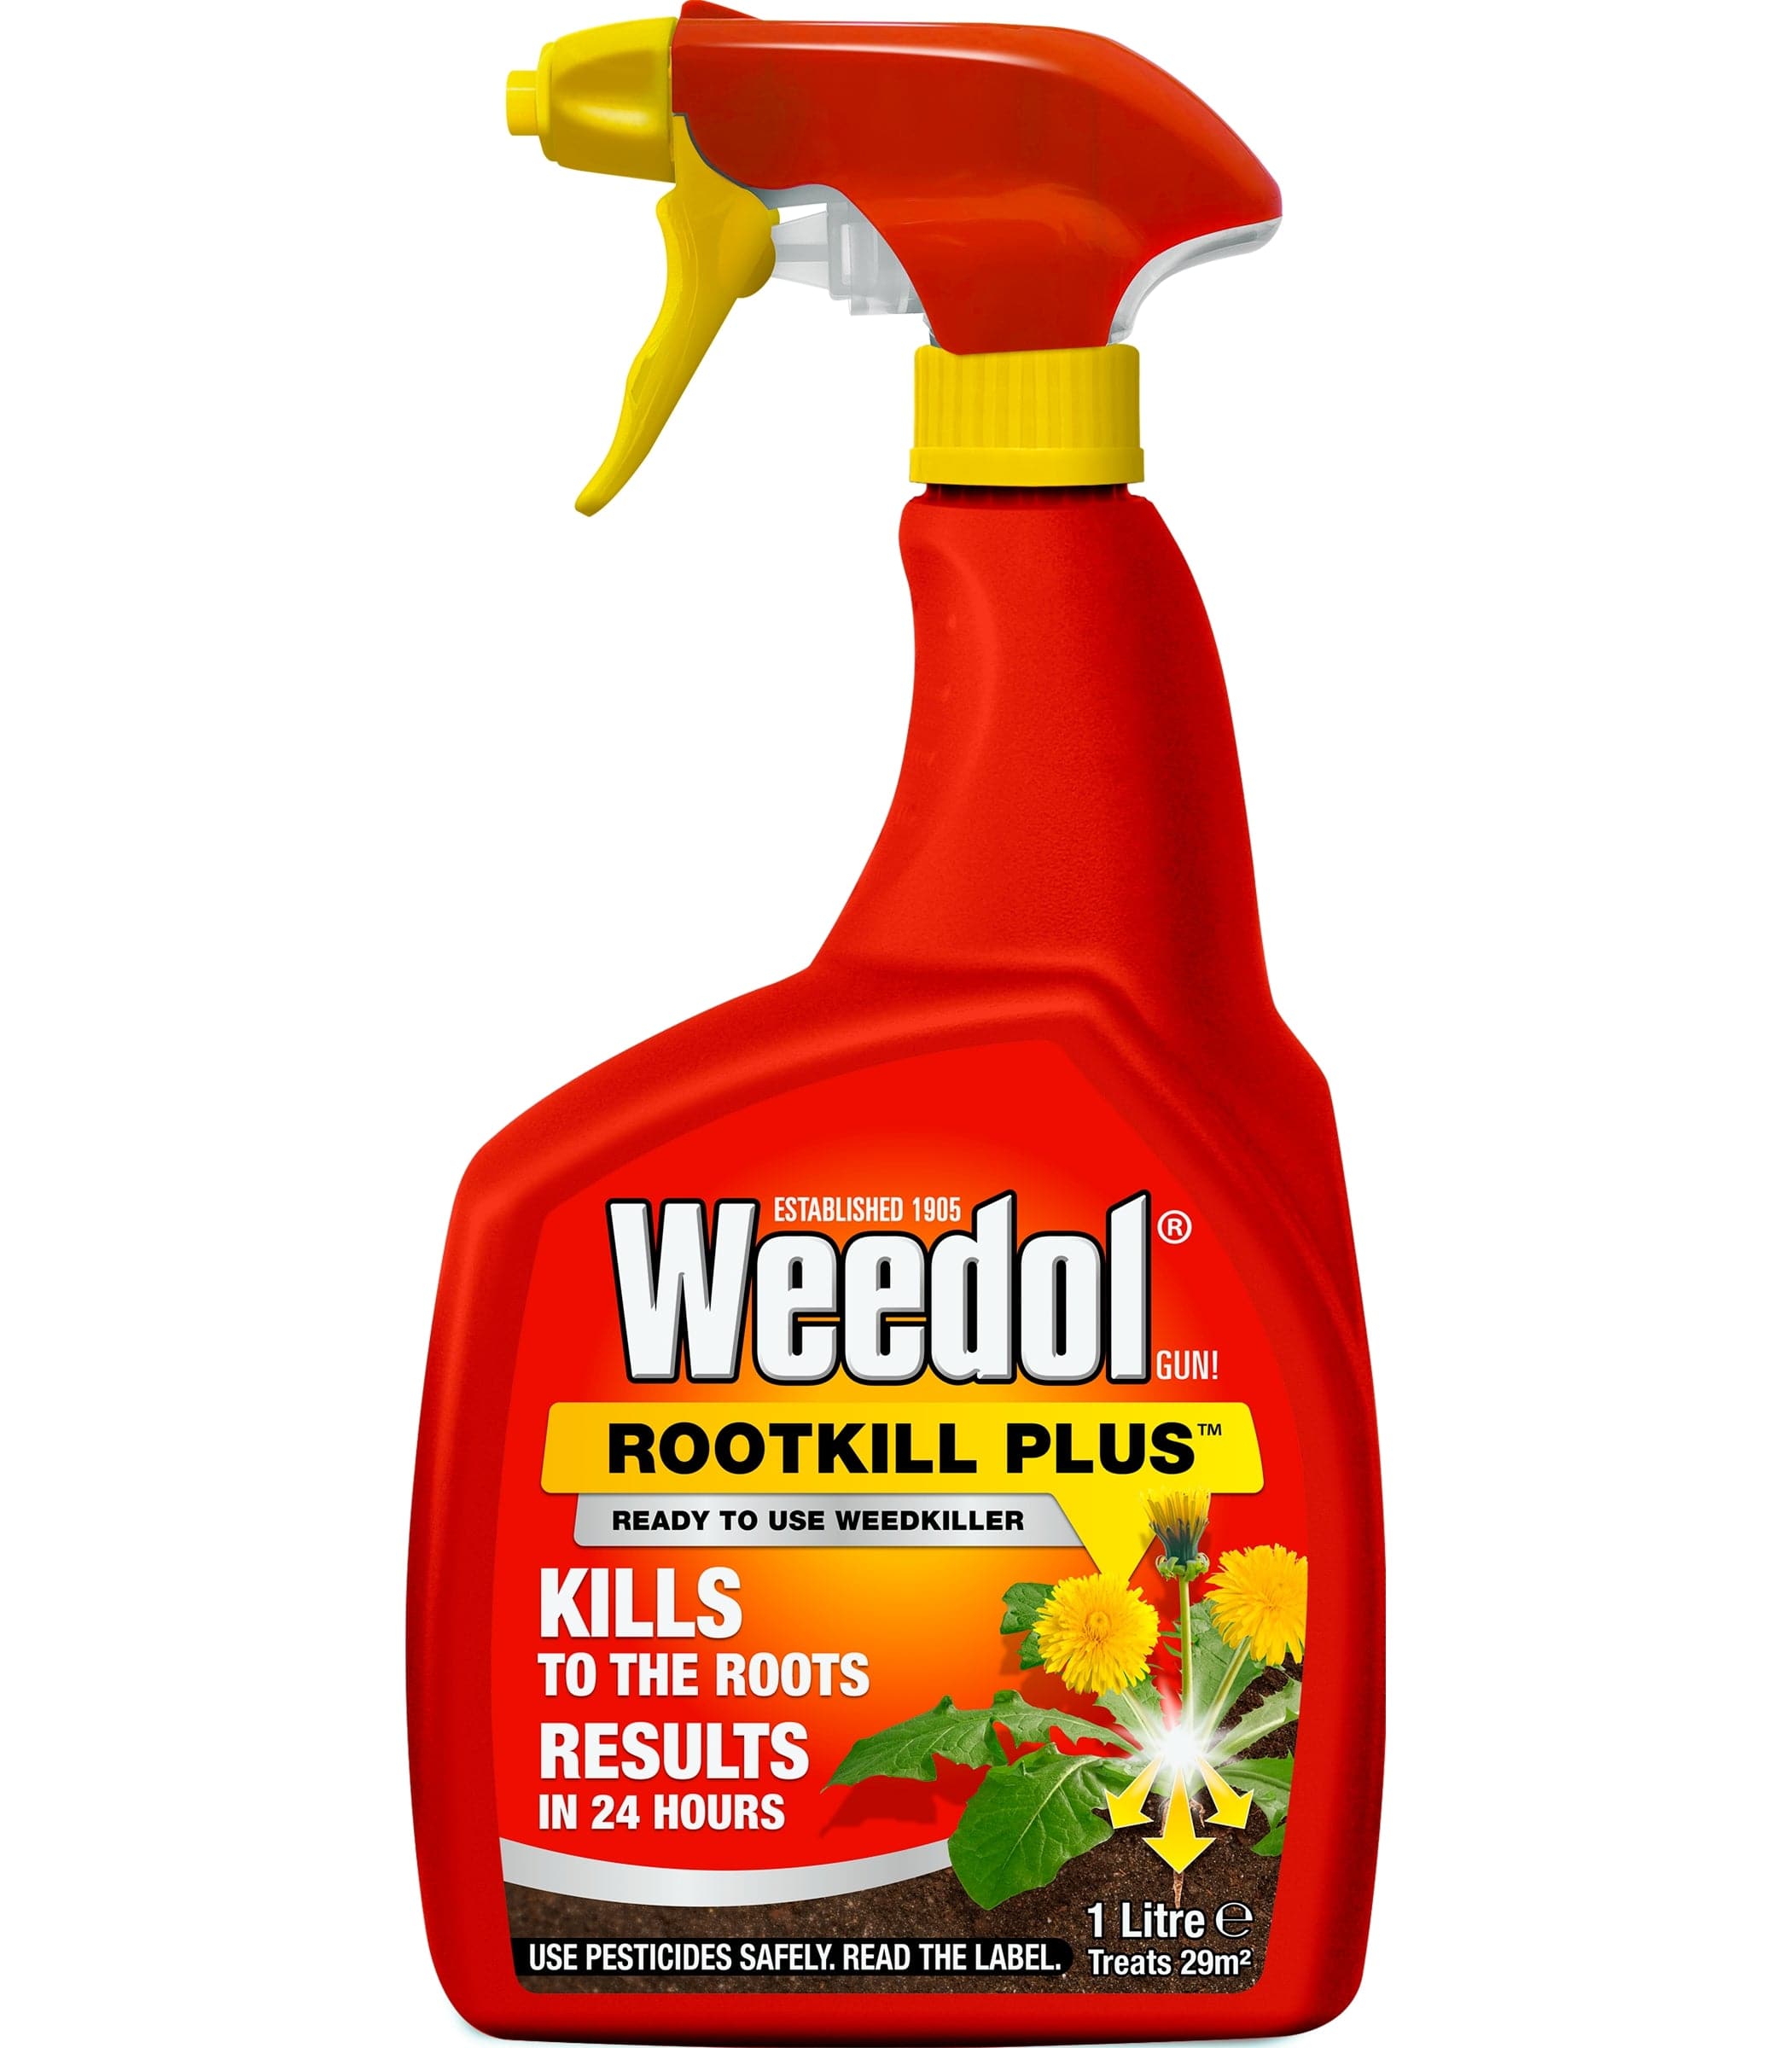 Weedol Weed Control Weedol Rootkill Plus Weed Killer 1L Ready to Use